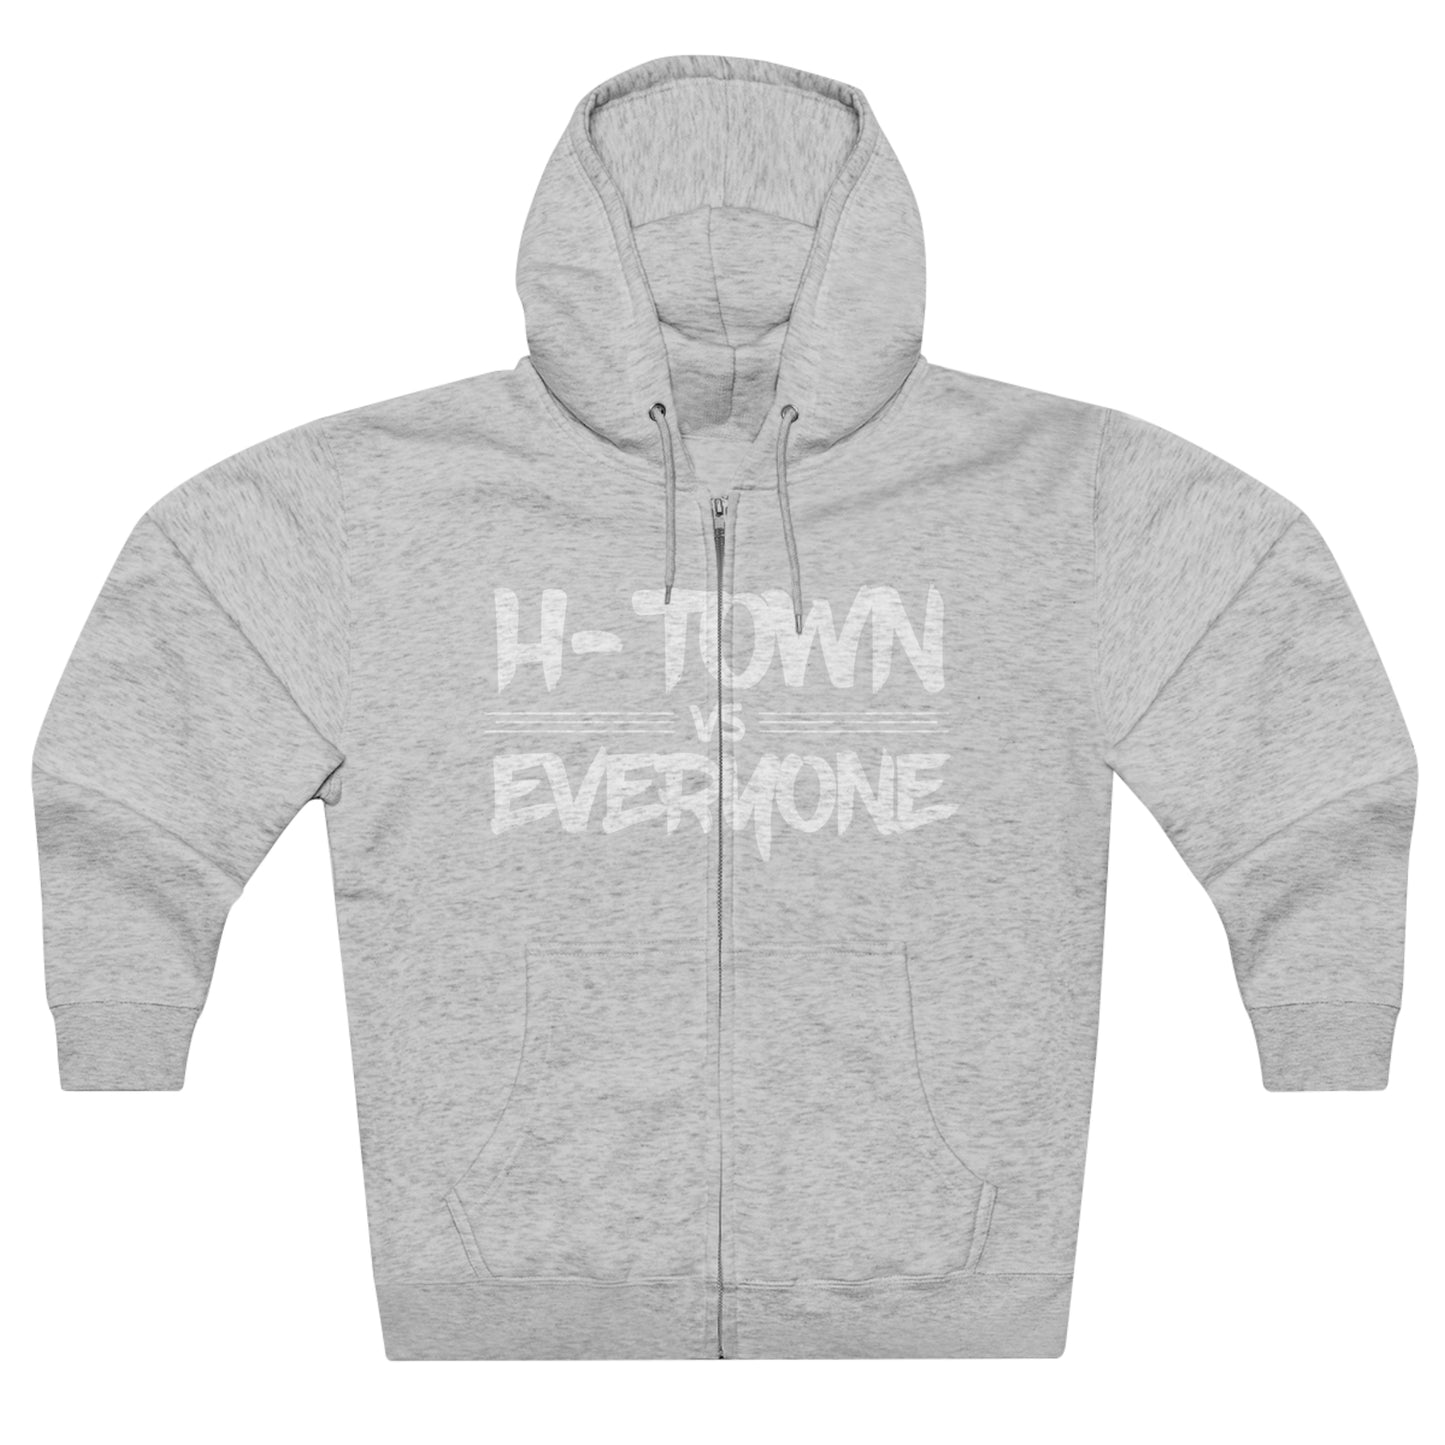 H-Town vs Everyone Unisex Full Zip Hoodie